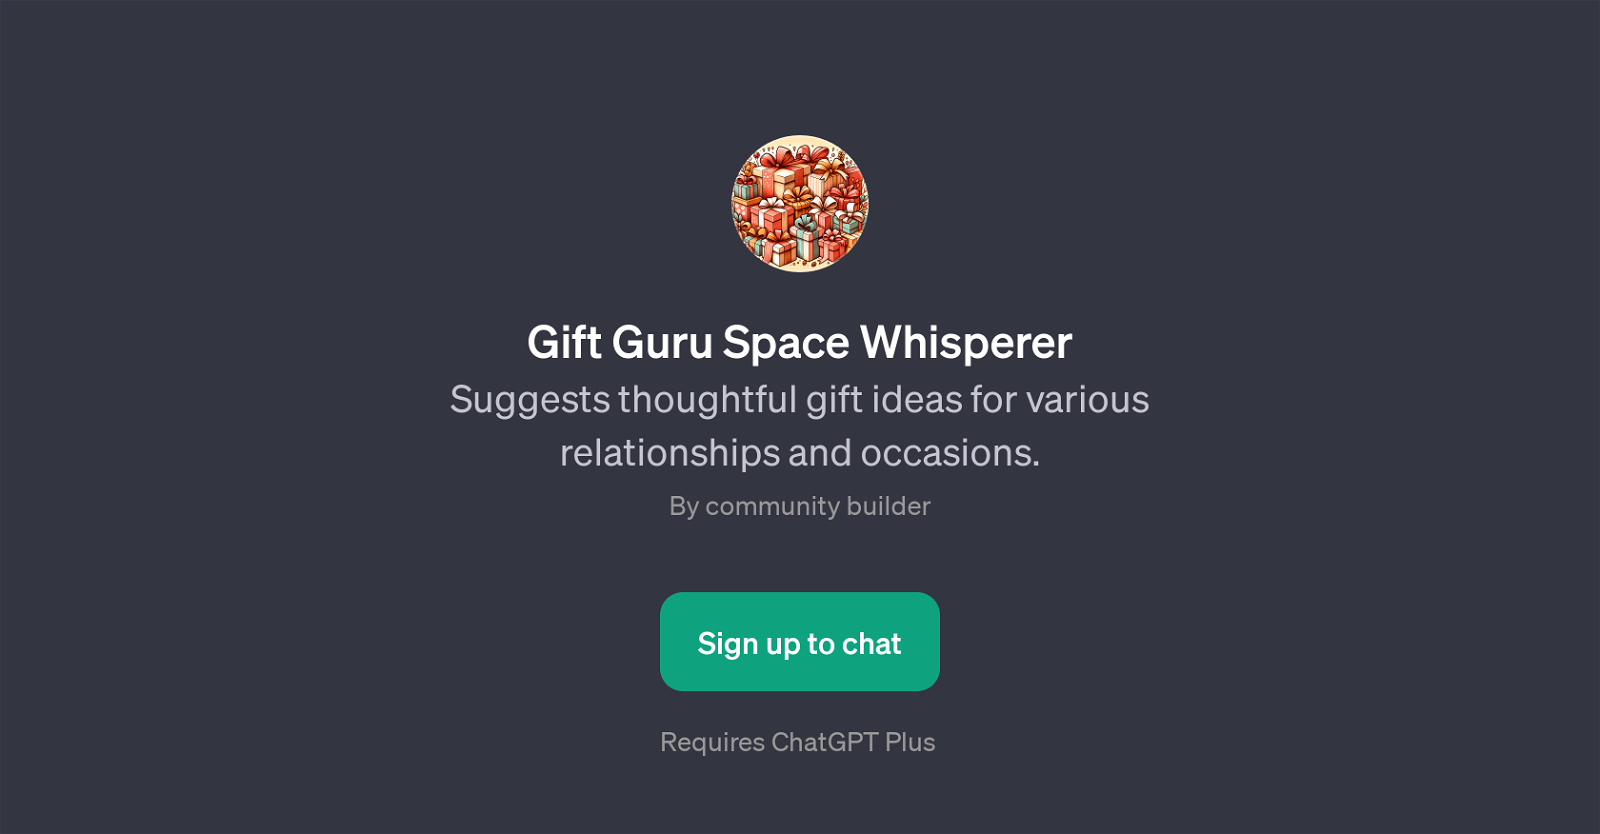 Gift Guru Space Whisperer website